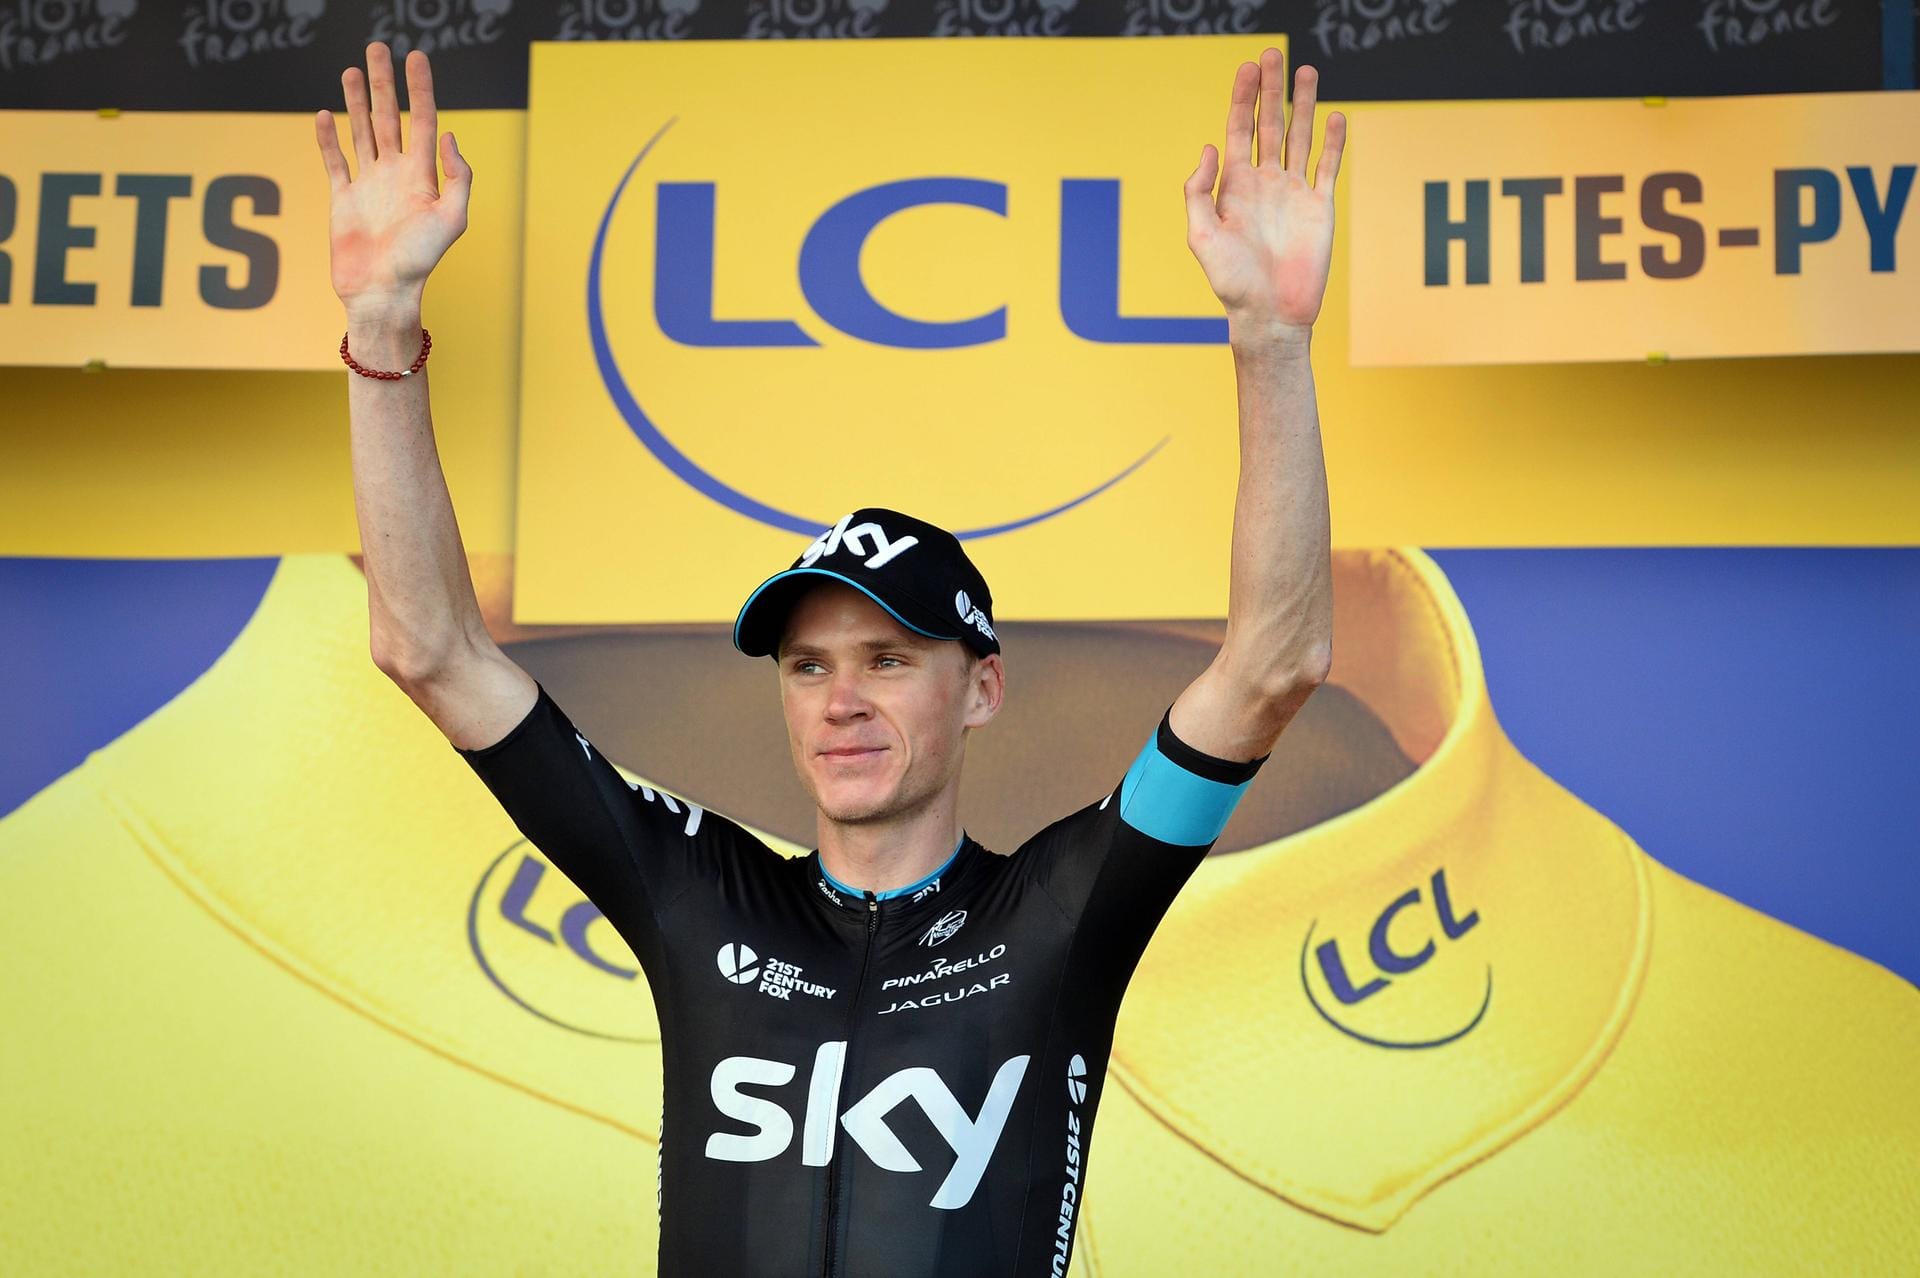 Die Lieblingsfarbe im Hintergrund: Zweimal hat Christopher Froome die Tour de France für das britische Sky-Team bereits gewonnen. Klar, dass der in Kenia geborene Kletterer der Chef der Mannschaft ist.